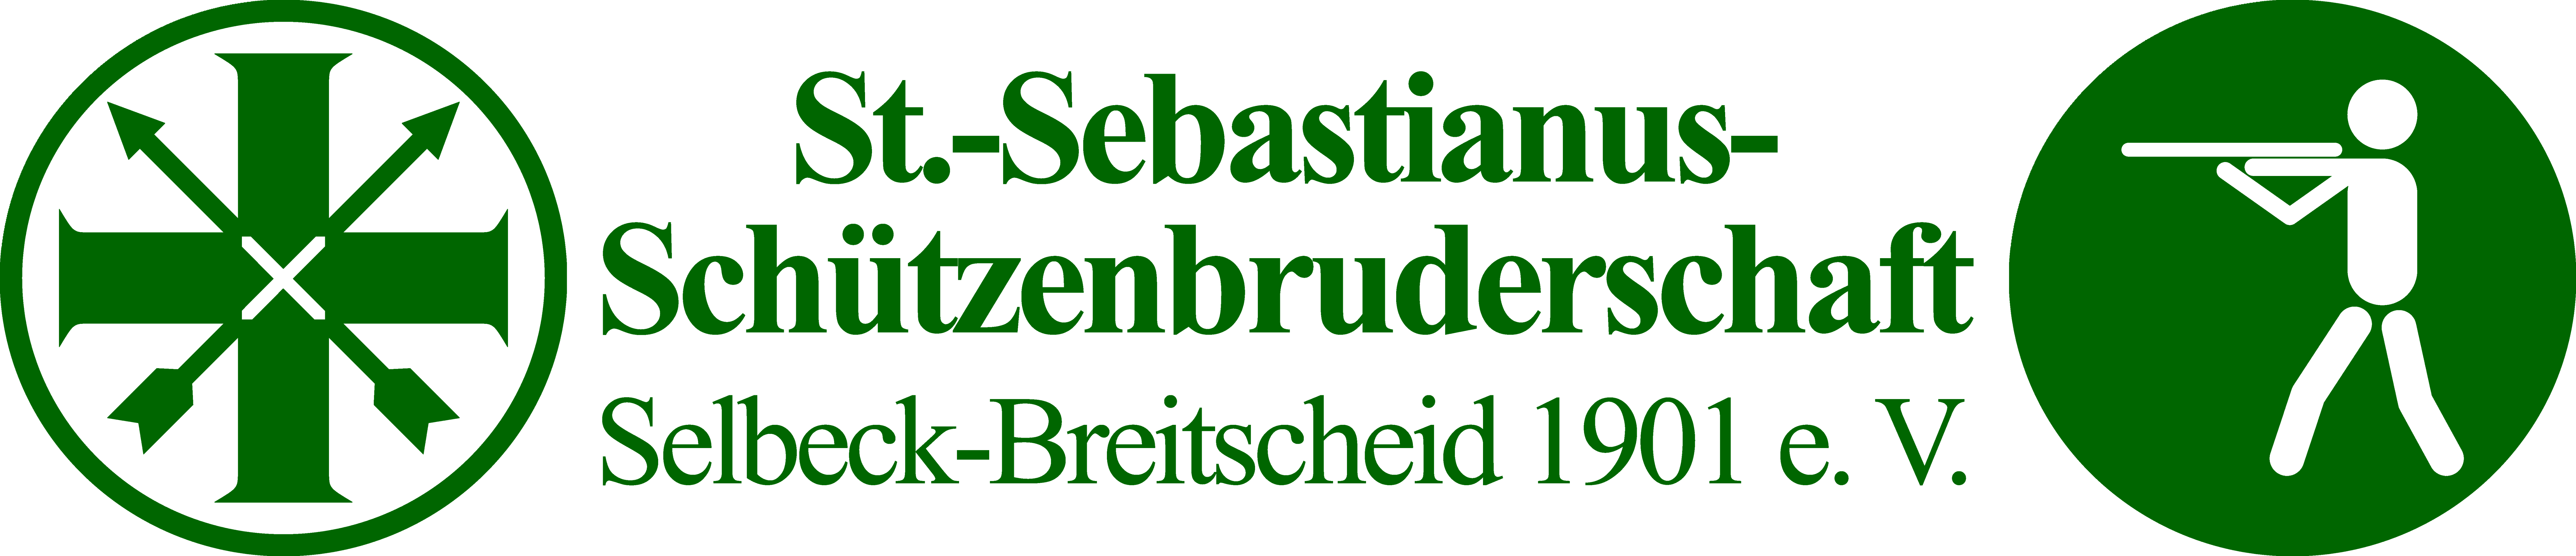 St. Sebastianus Schützenbruderschaft Selbeck-Breitscheid 1901 e.V.